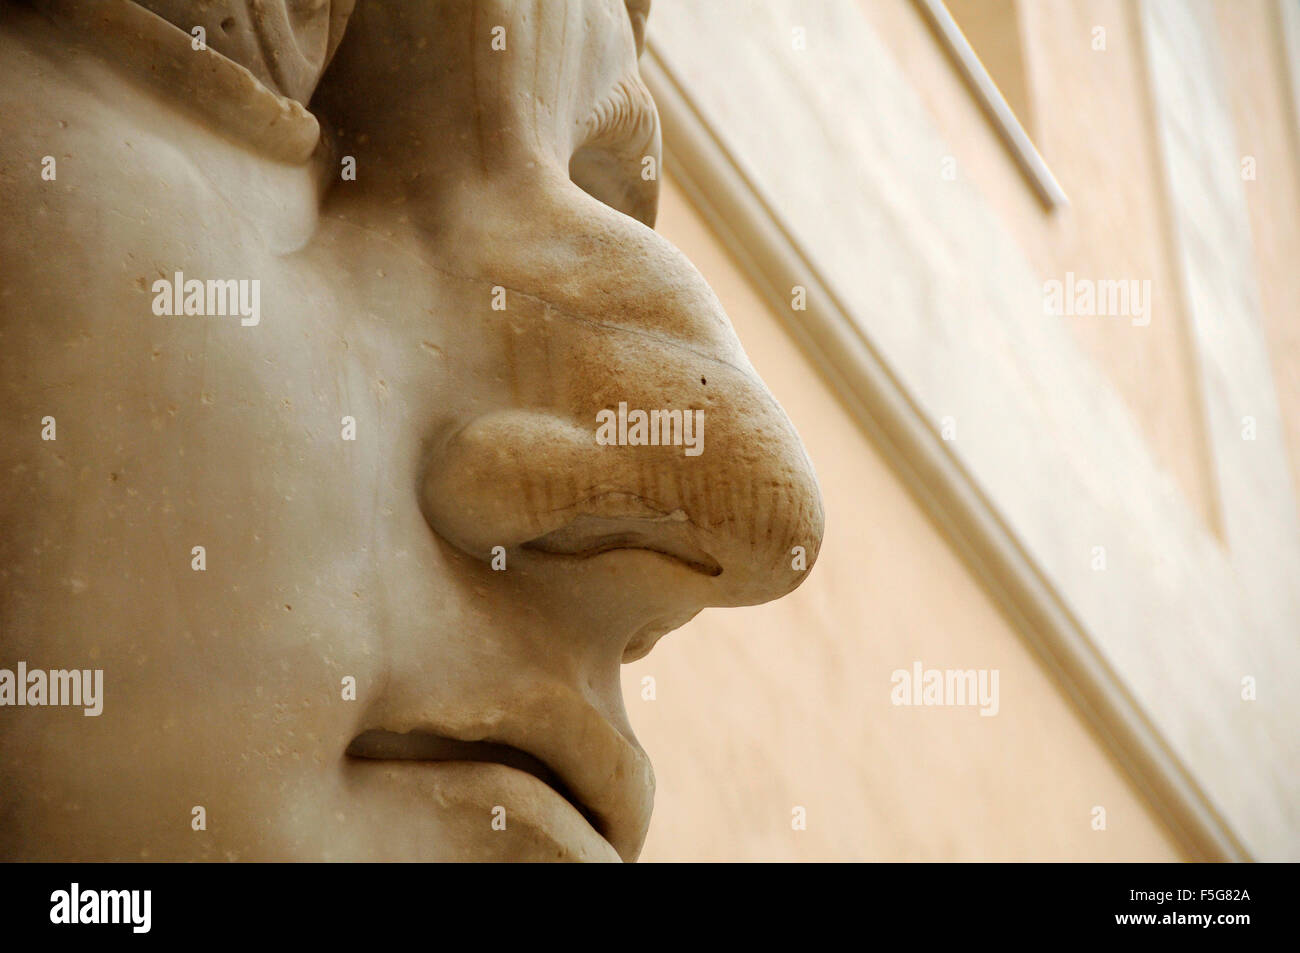 ramsnase-marmorstatue-bleibt-riesige-statue-des-roman-emperor-constantine-in-den-kapitolinischen-museen-rom-italien-f5g82a.jpg